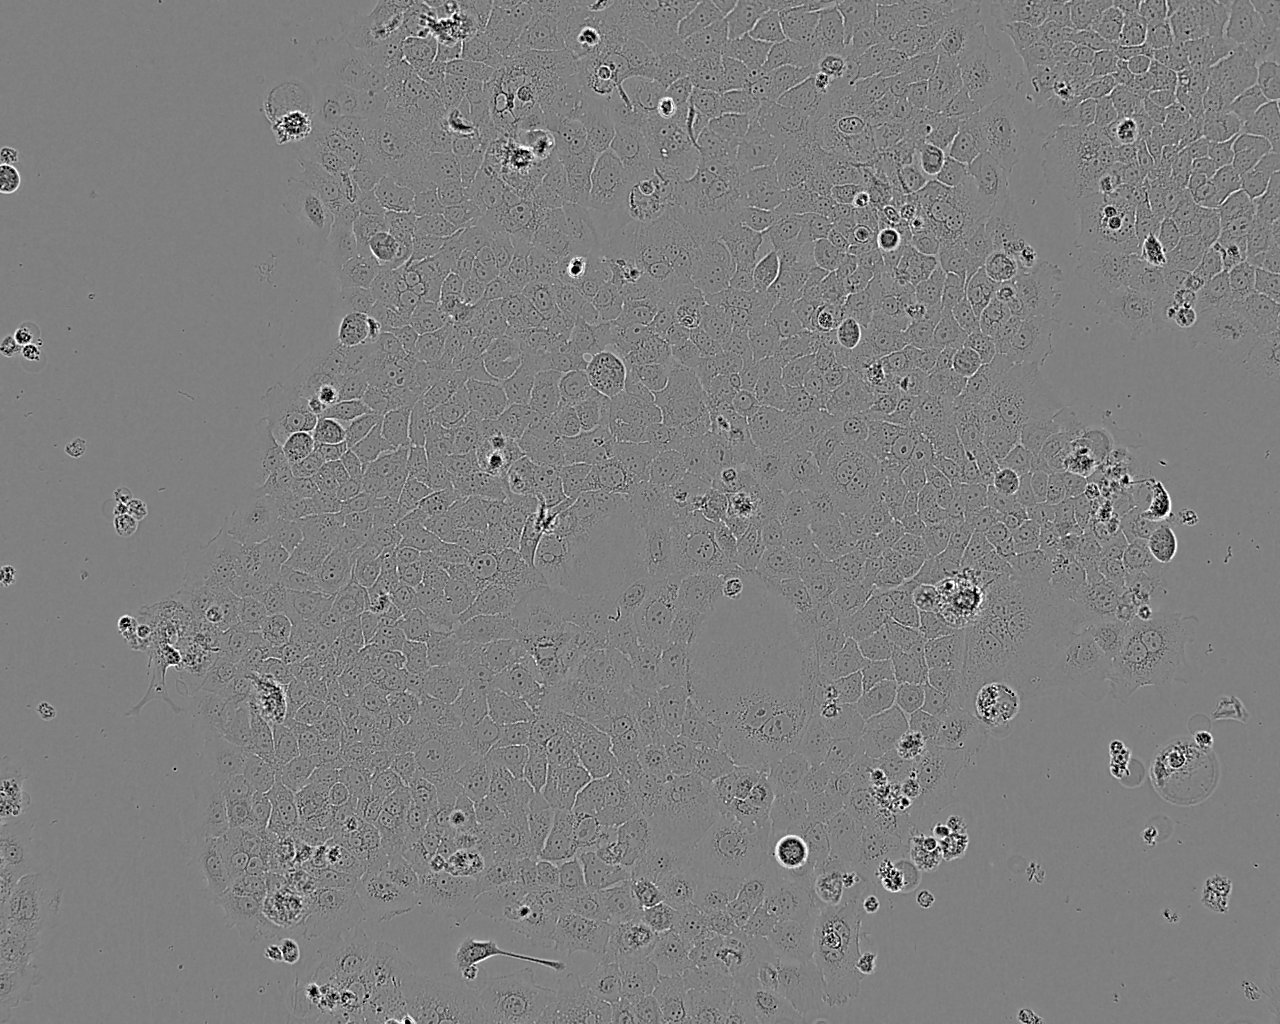 OVCA432 人卵巢癌细胞系